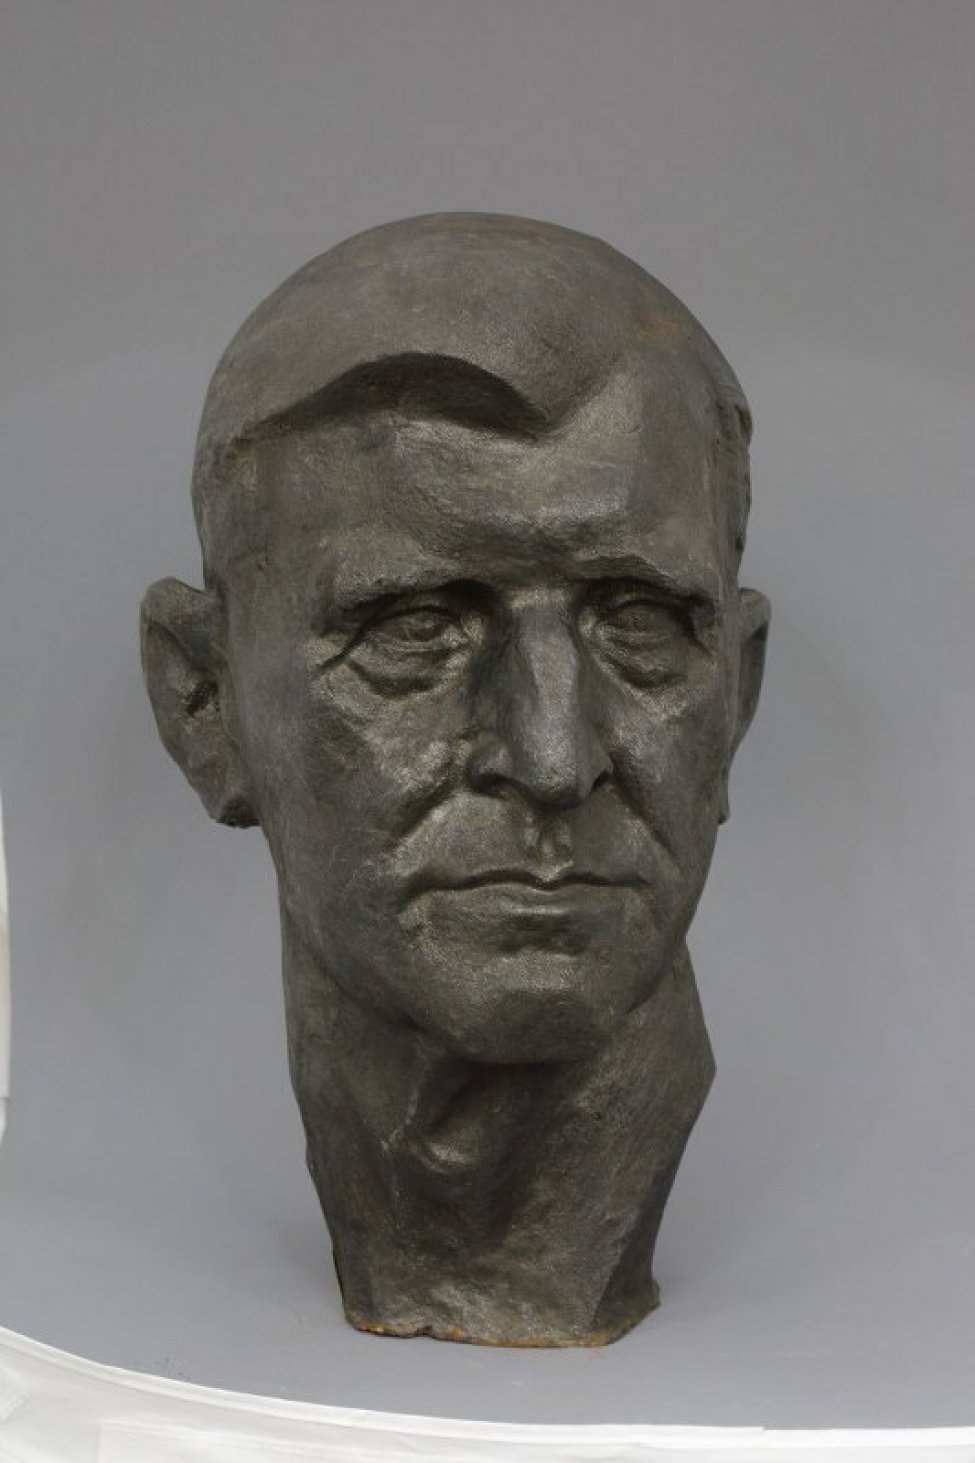 Скульптурное изображение головы пожилого мужчины. Голова в фас с крупным носом, плотно сжатыми губами с нависшими на глаза надбровными дугами. Гладкие волосы зачесаны на правую сторону.